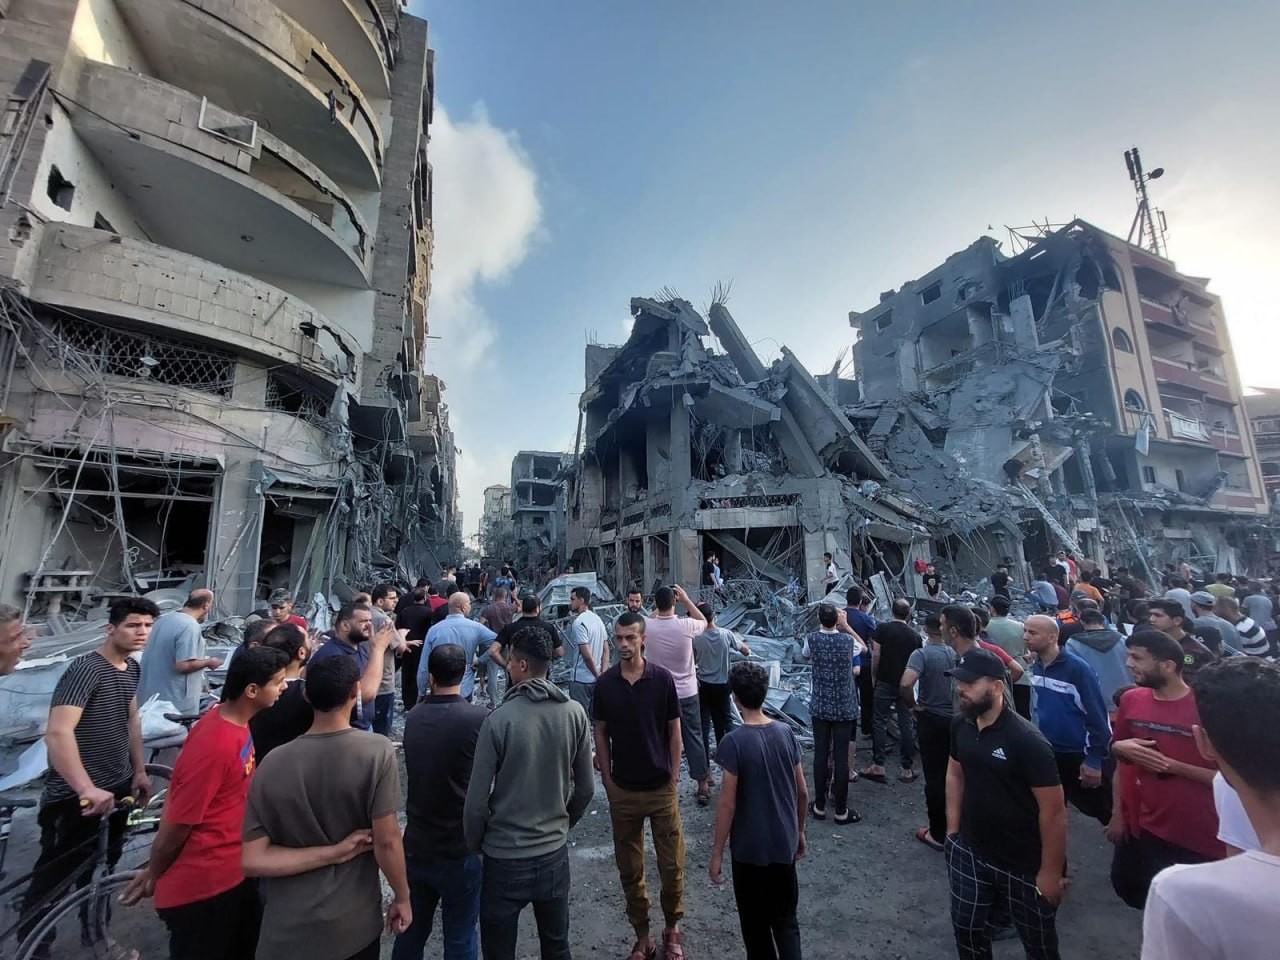 بالصور : الطيران الاسرائيلي يقصف مجمع تجاري وسط سوق النصيرات